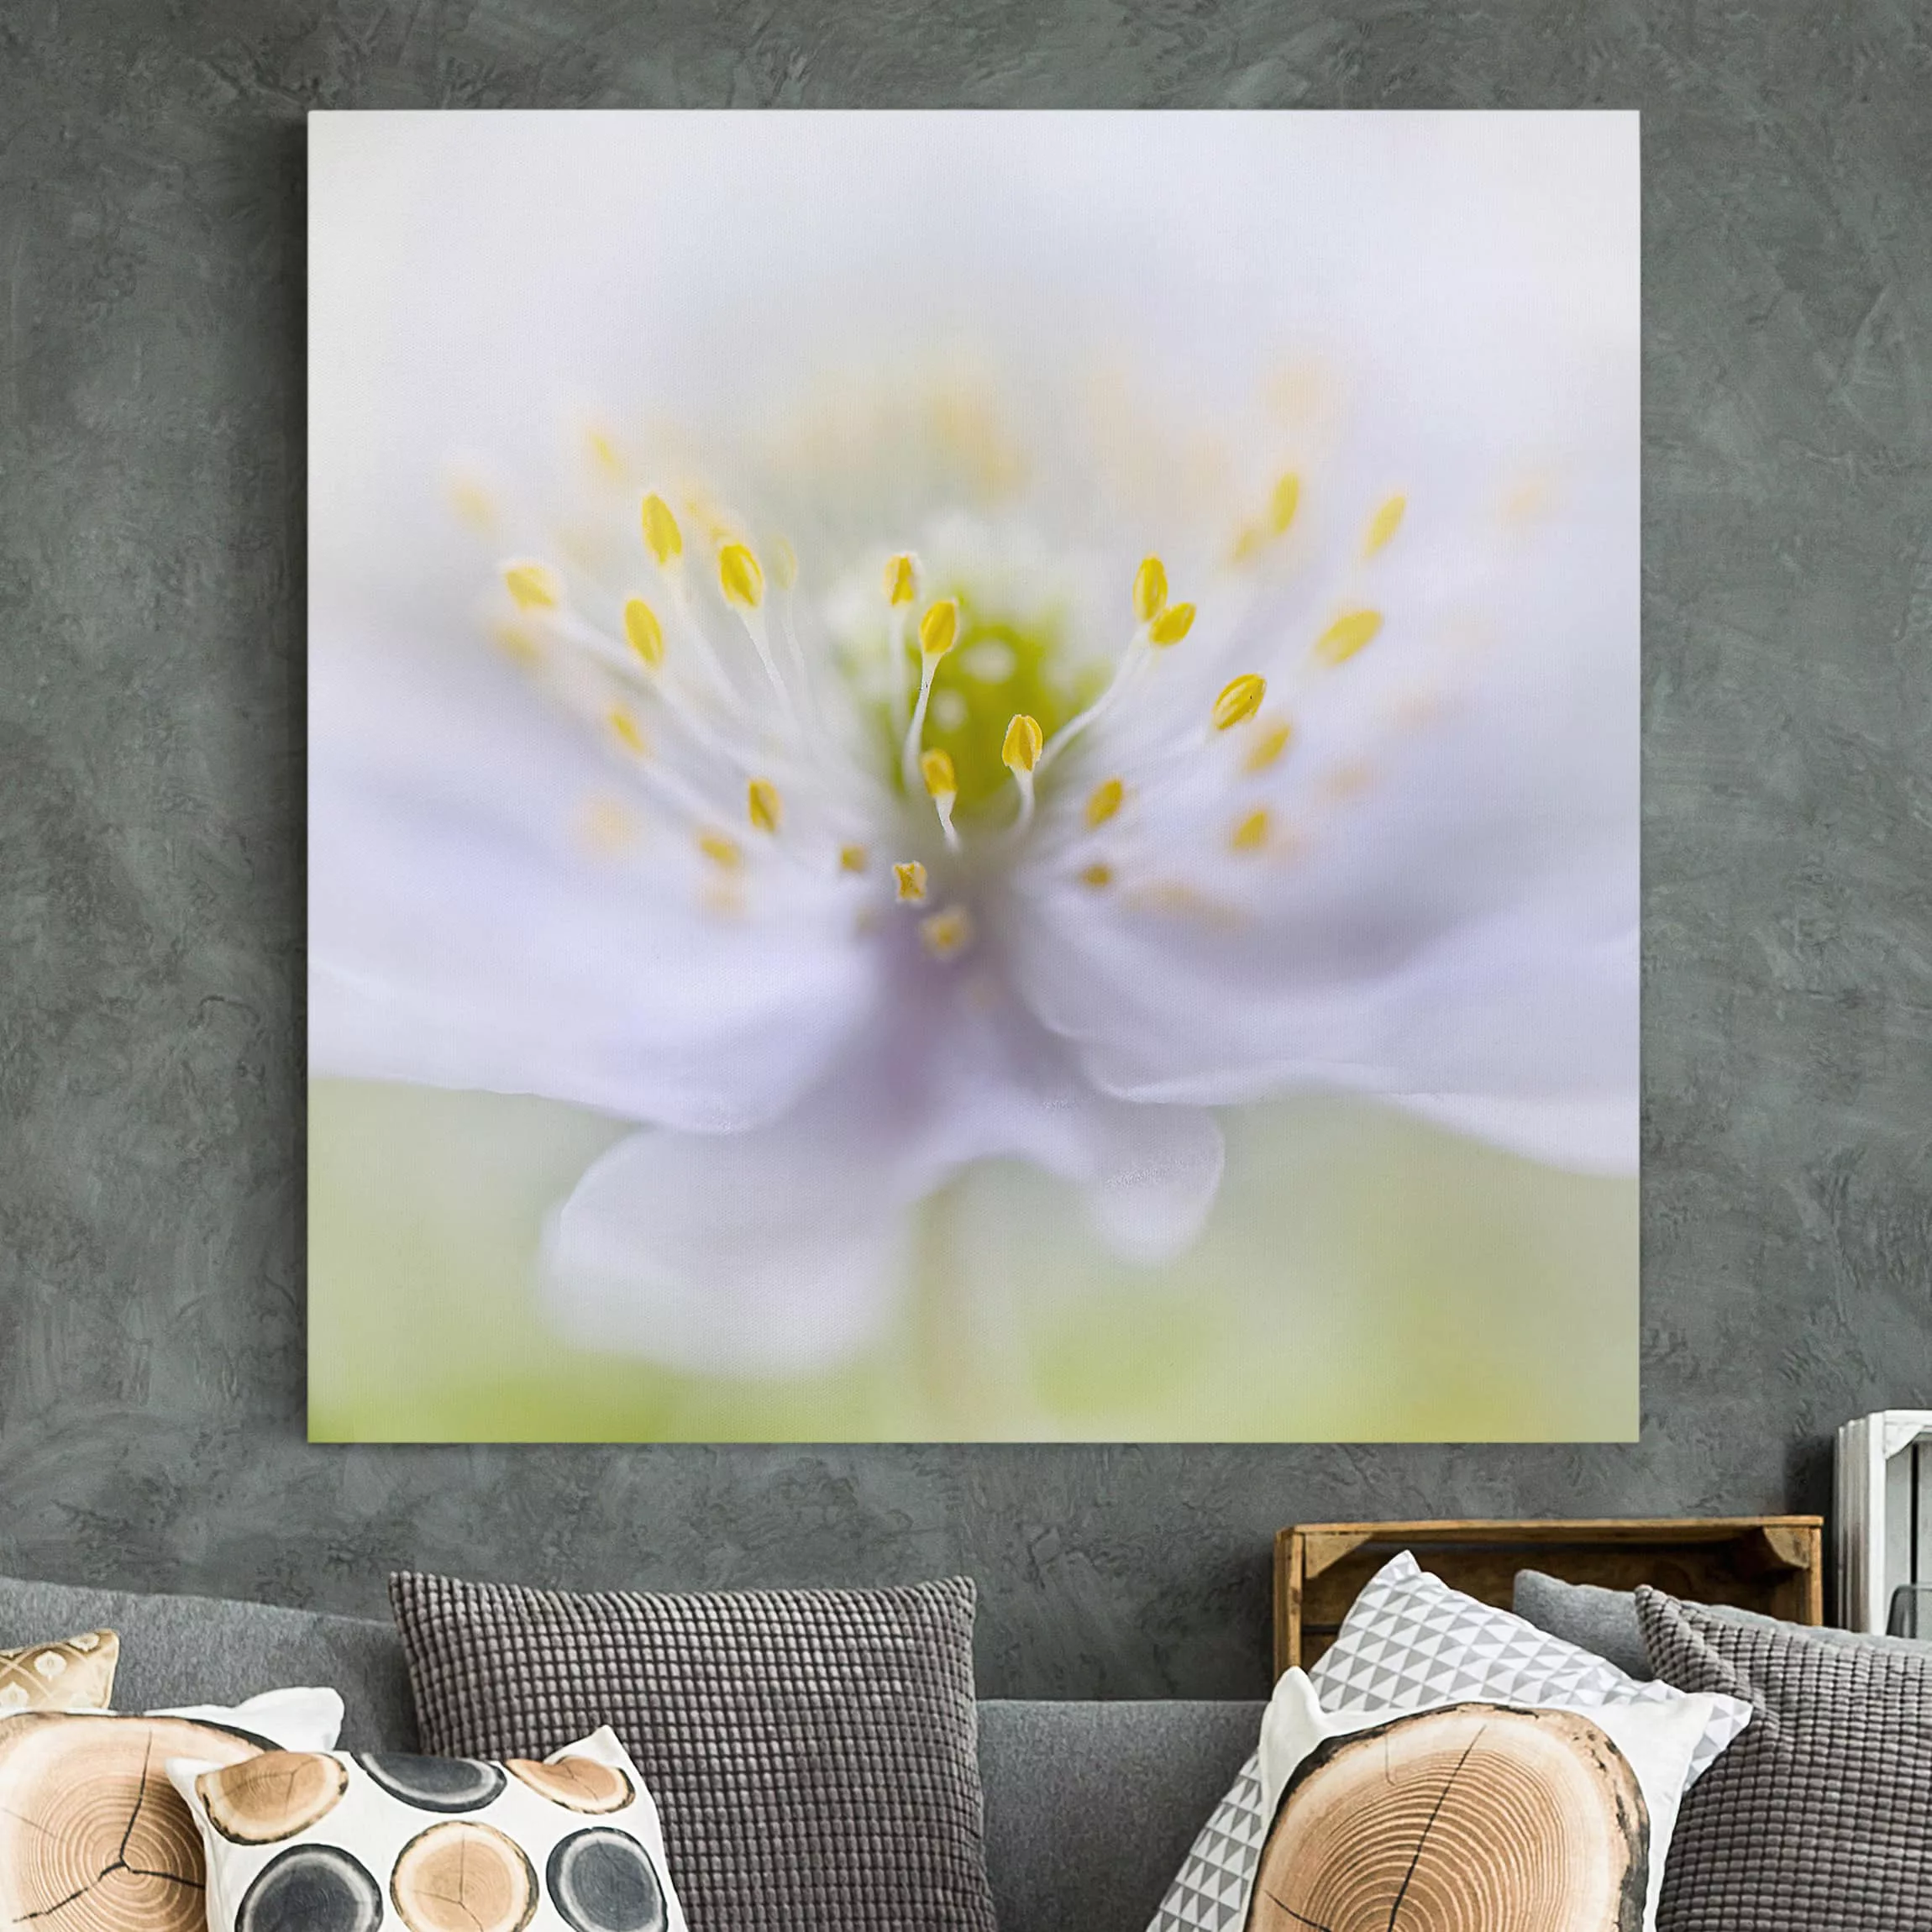 Leinwandbild Blumen - Quadrat Anemonen Schönheit günstig online kaufen